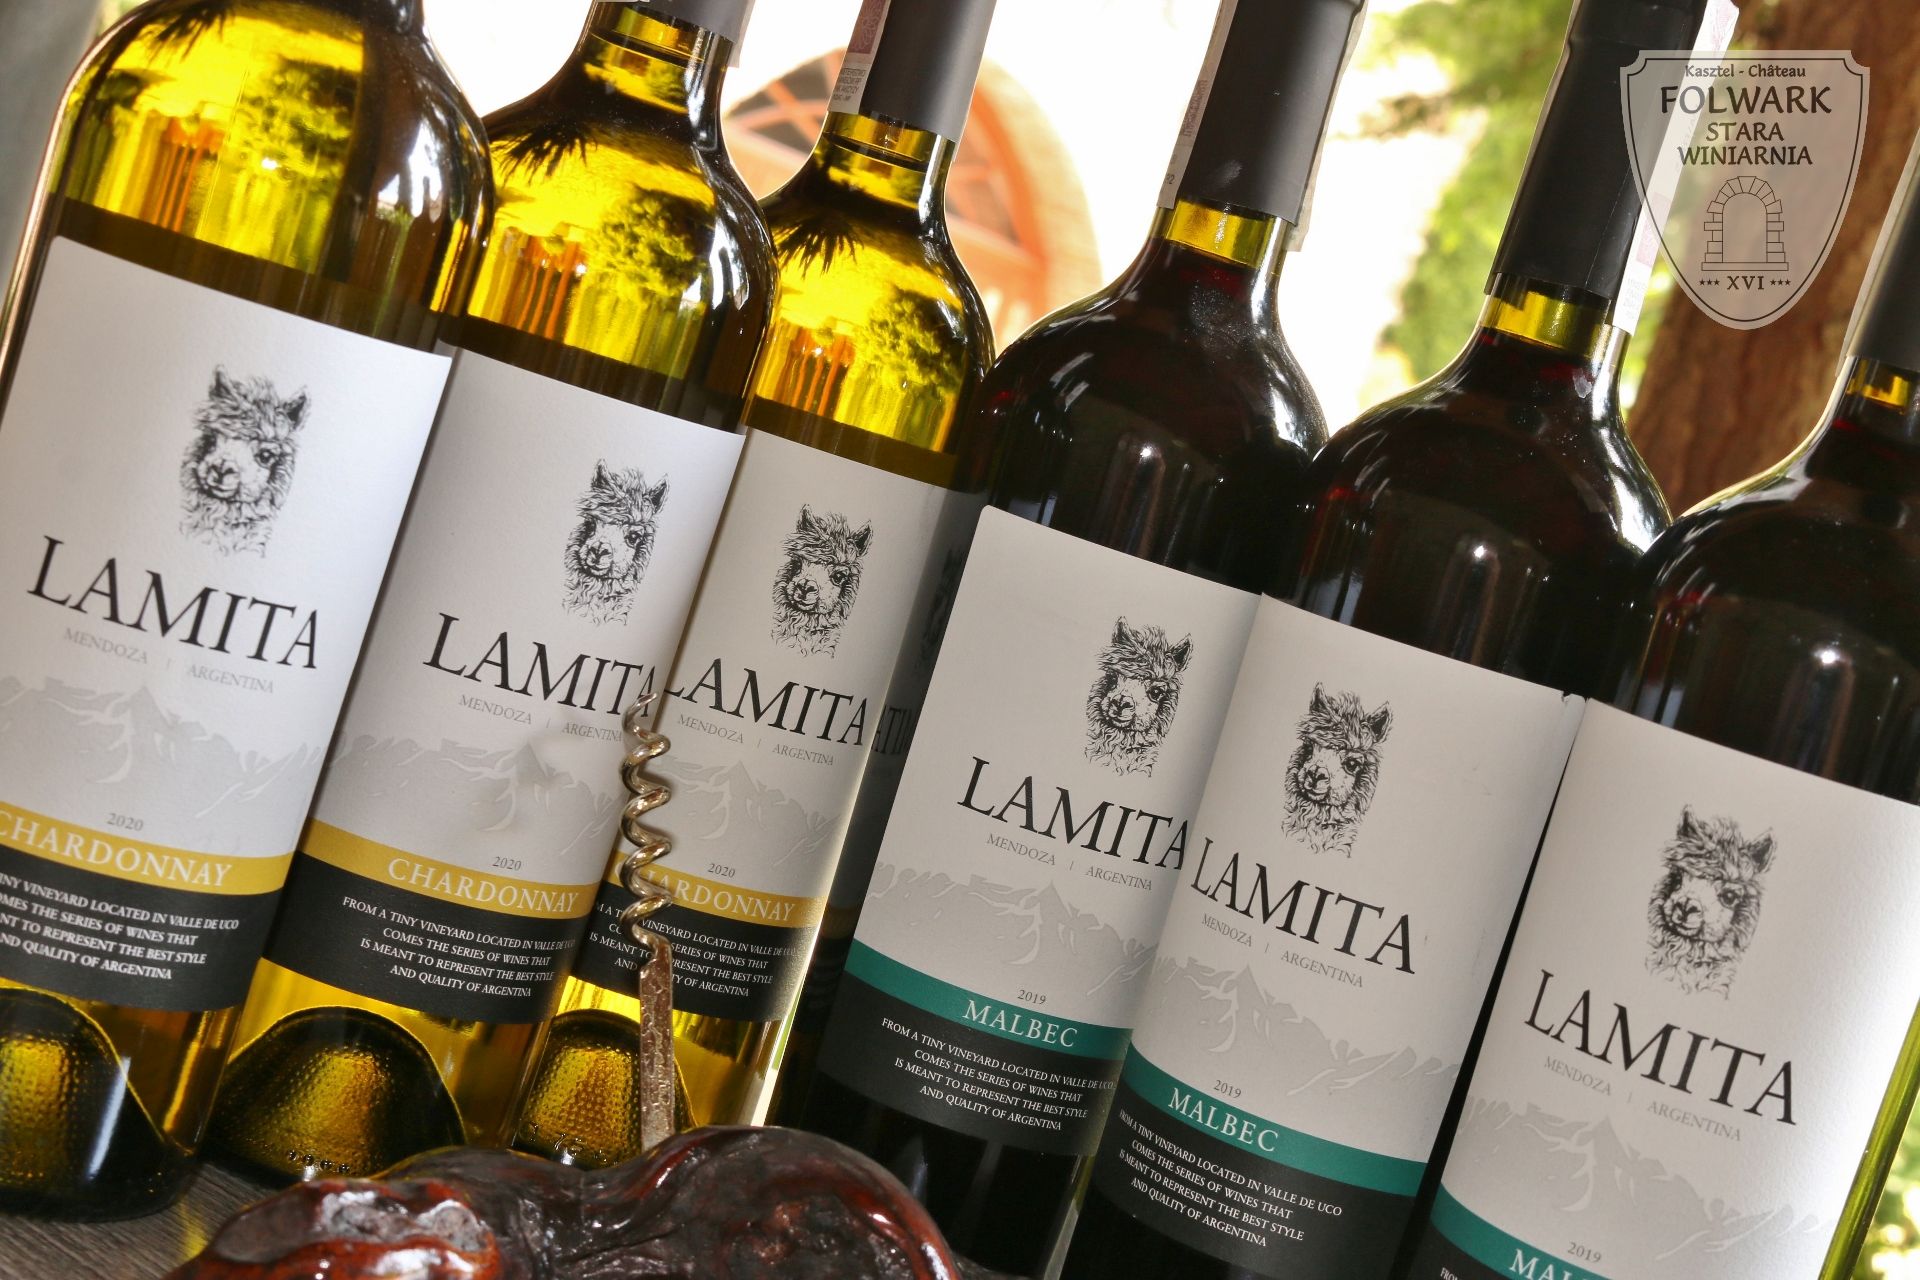 wino miesiąca Lamita Argentyna Mendoza Folwark Stara Winiarnia Mszana Dolna